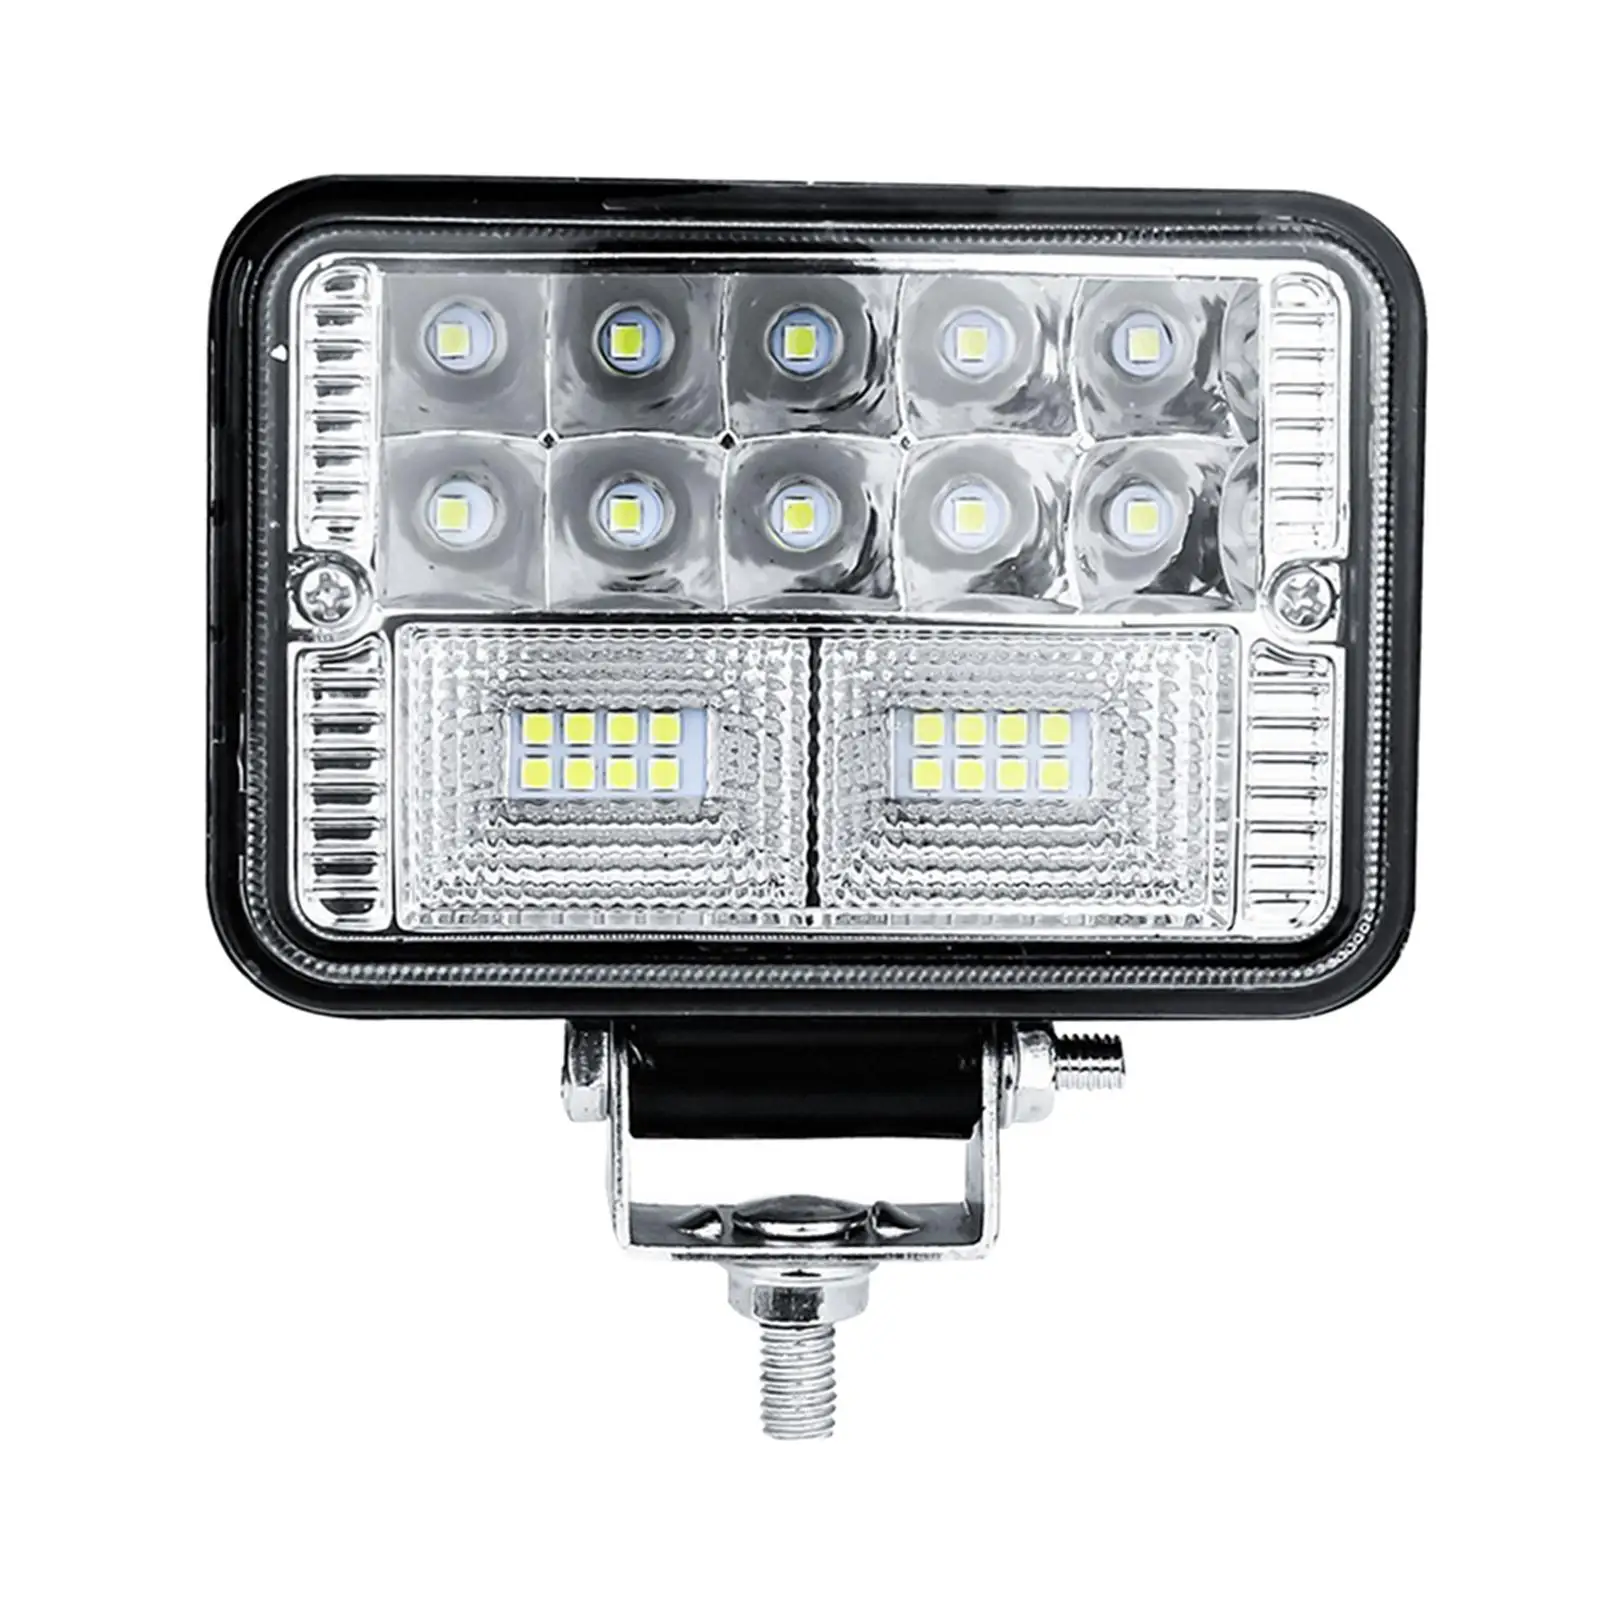 Truck LED  78W 6000K Headlights IP67 Waterproof for Truck Motorbike